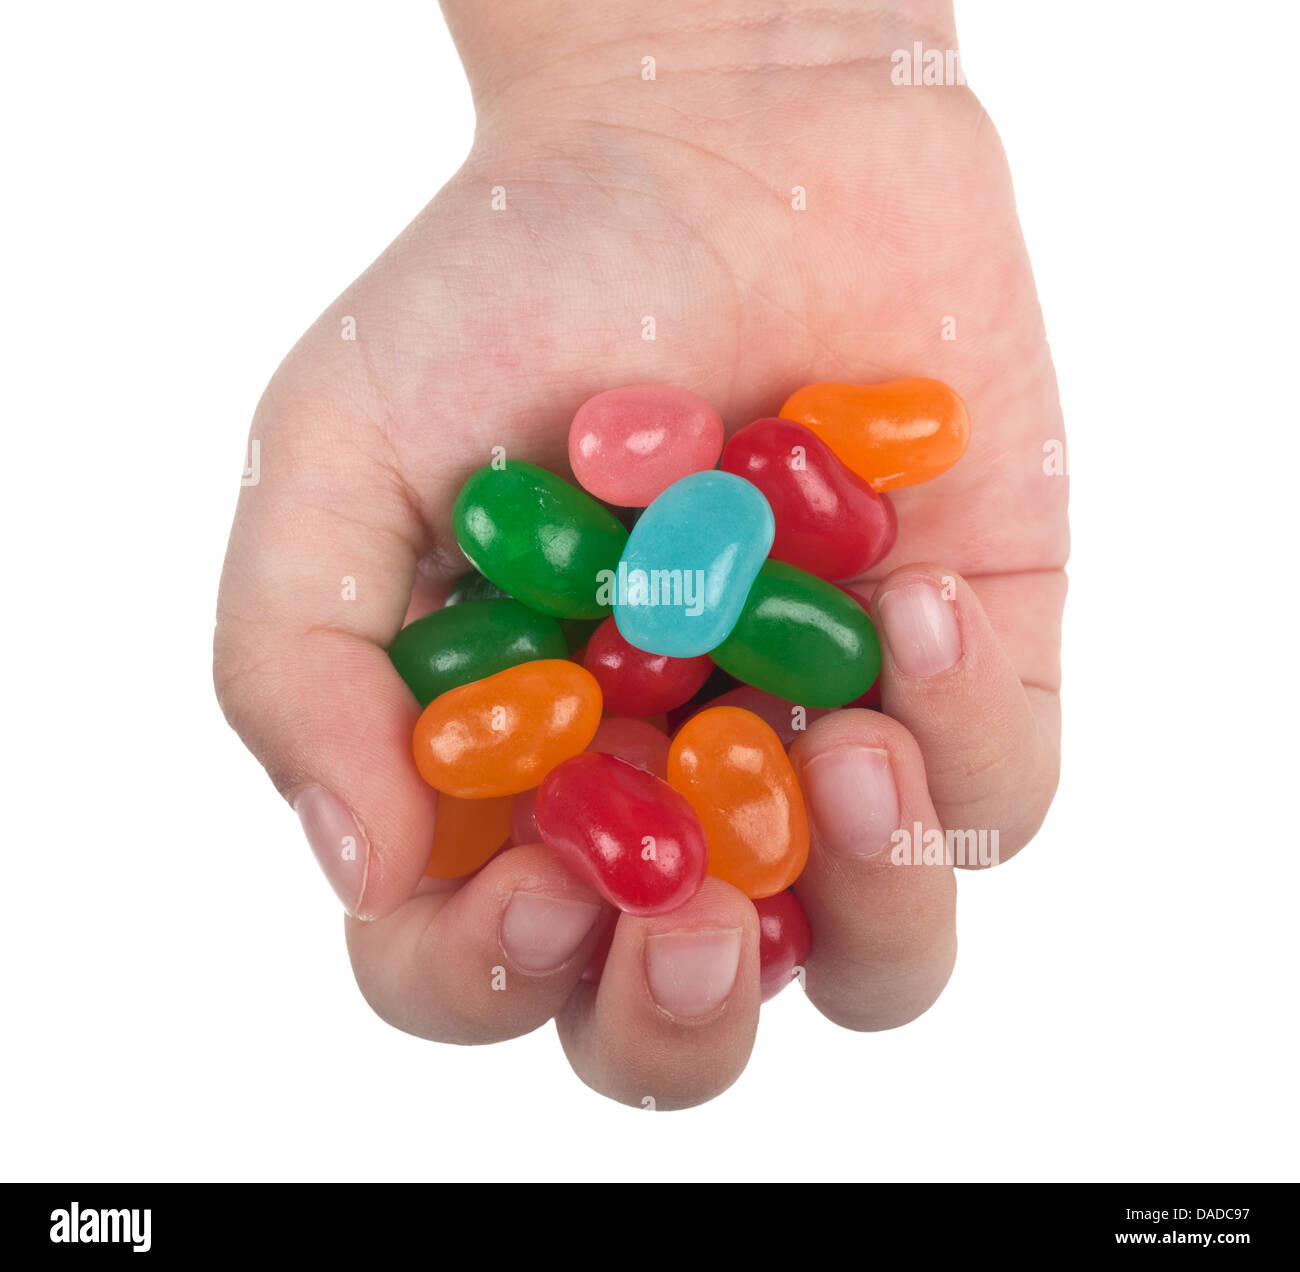 La main de l'enfant pleine de jelly bean candy isolé sur fond blanc Banque D'Images